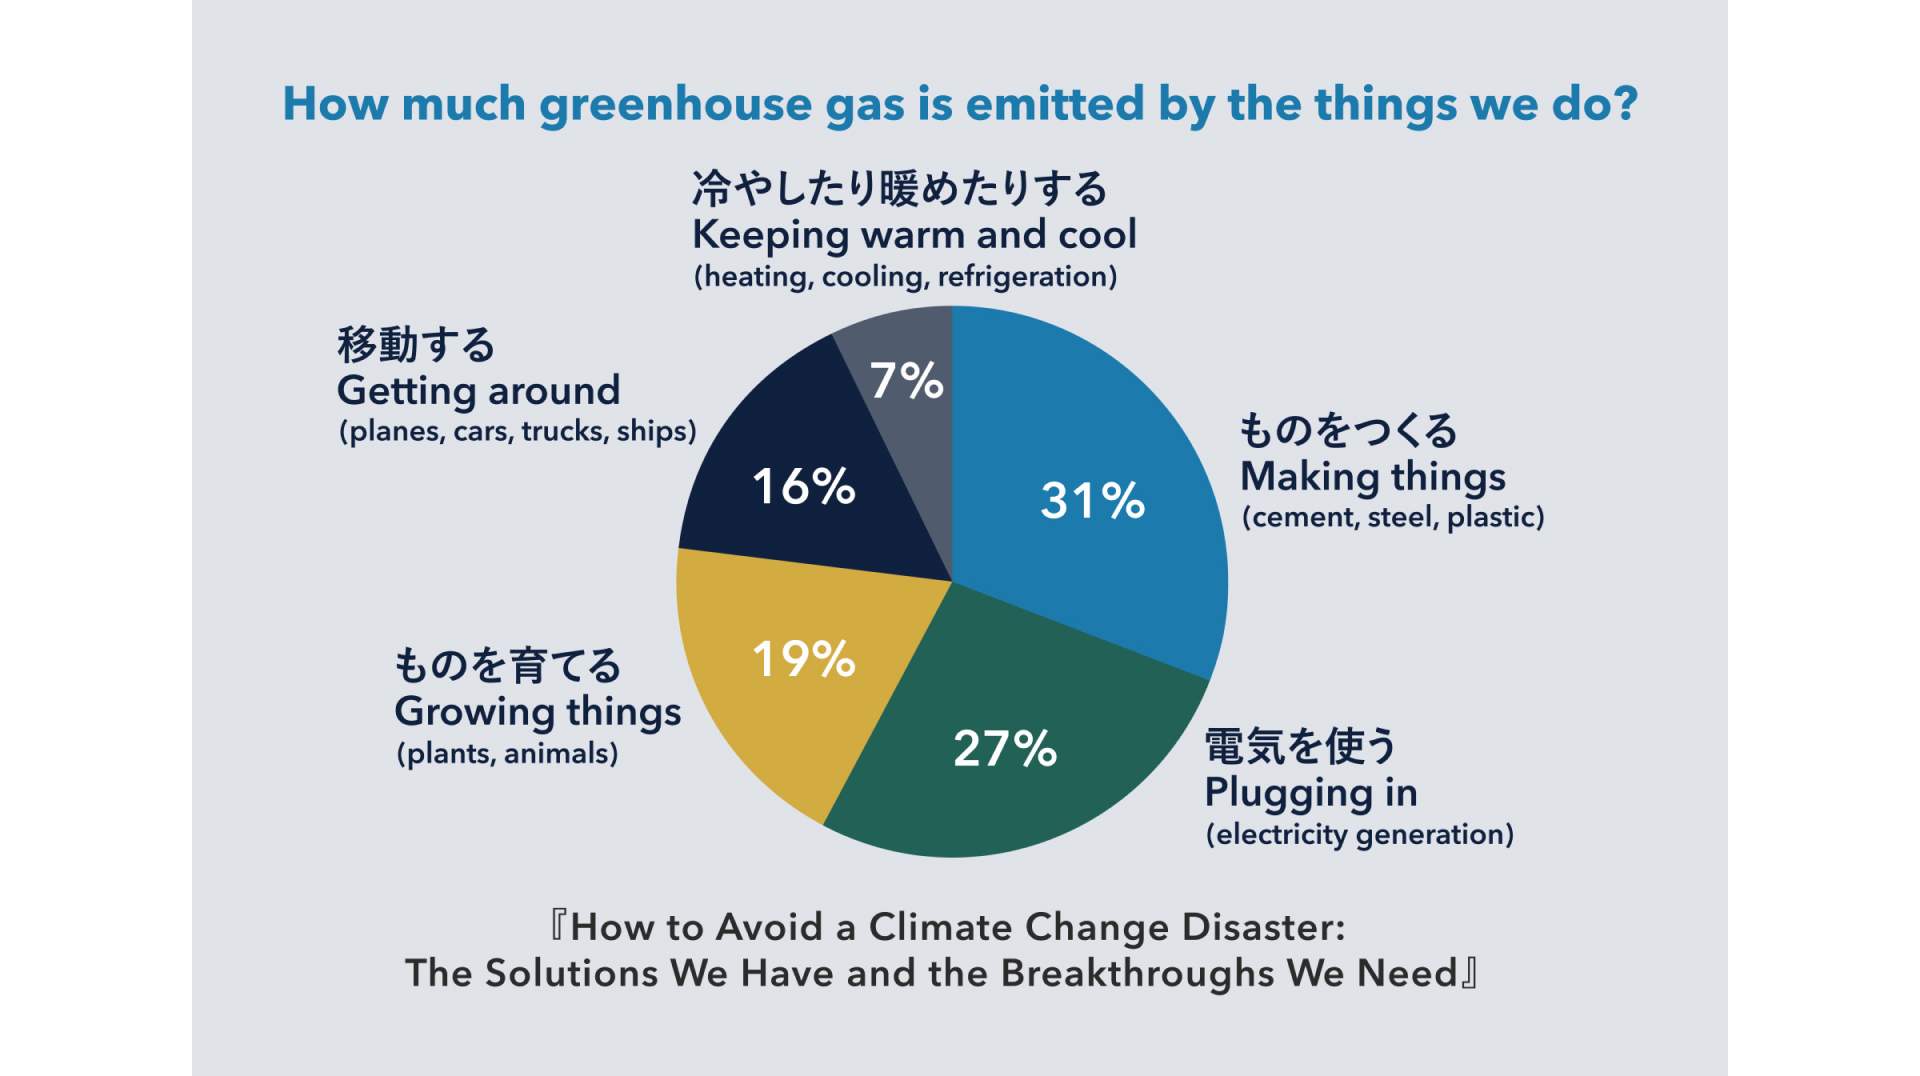 【図2】人間の活動によって排出される温室効果ガス量の内訳